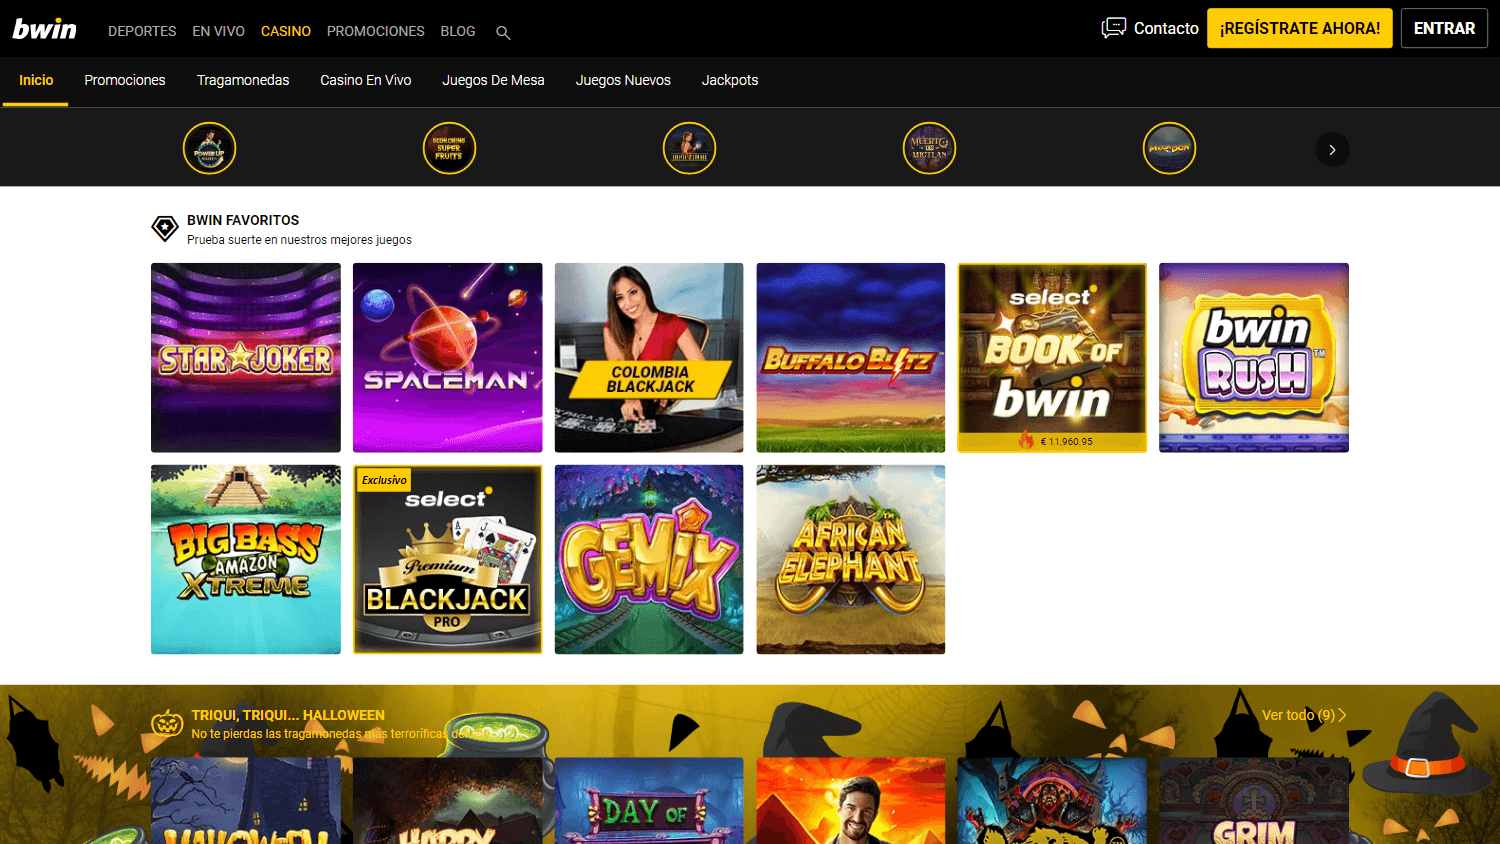 bwin_casino_co_homepage_desktop